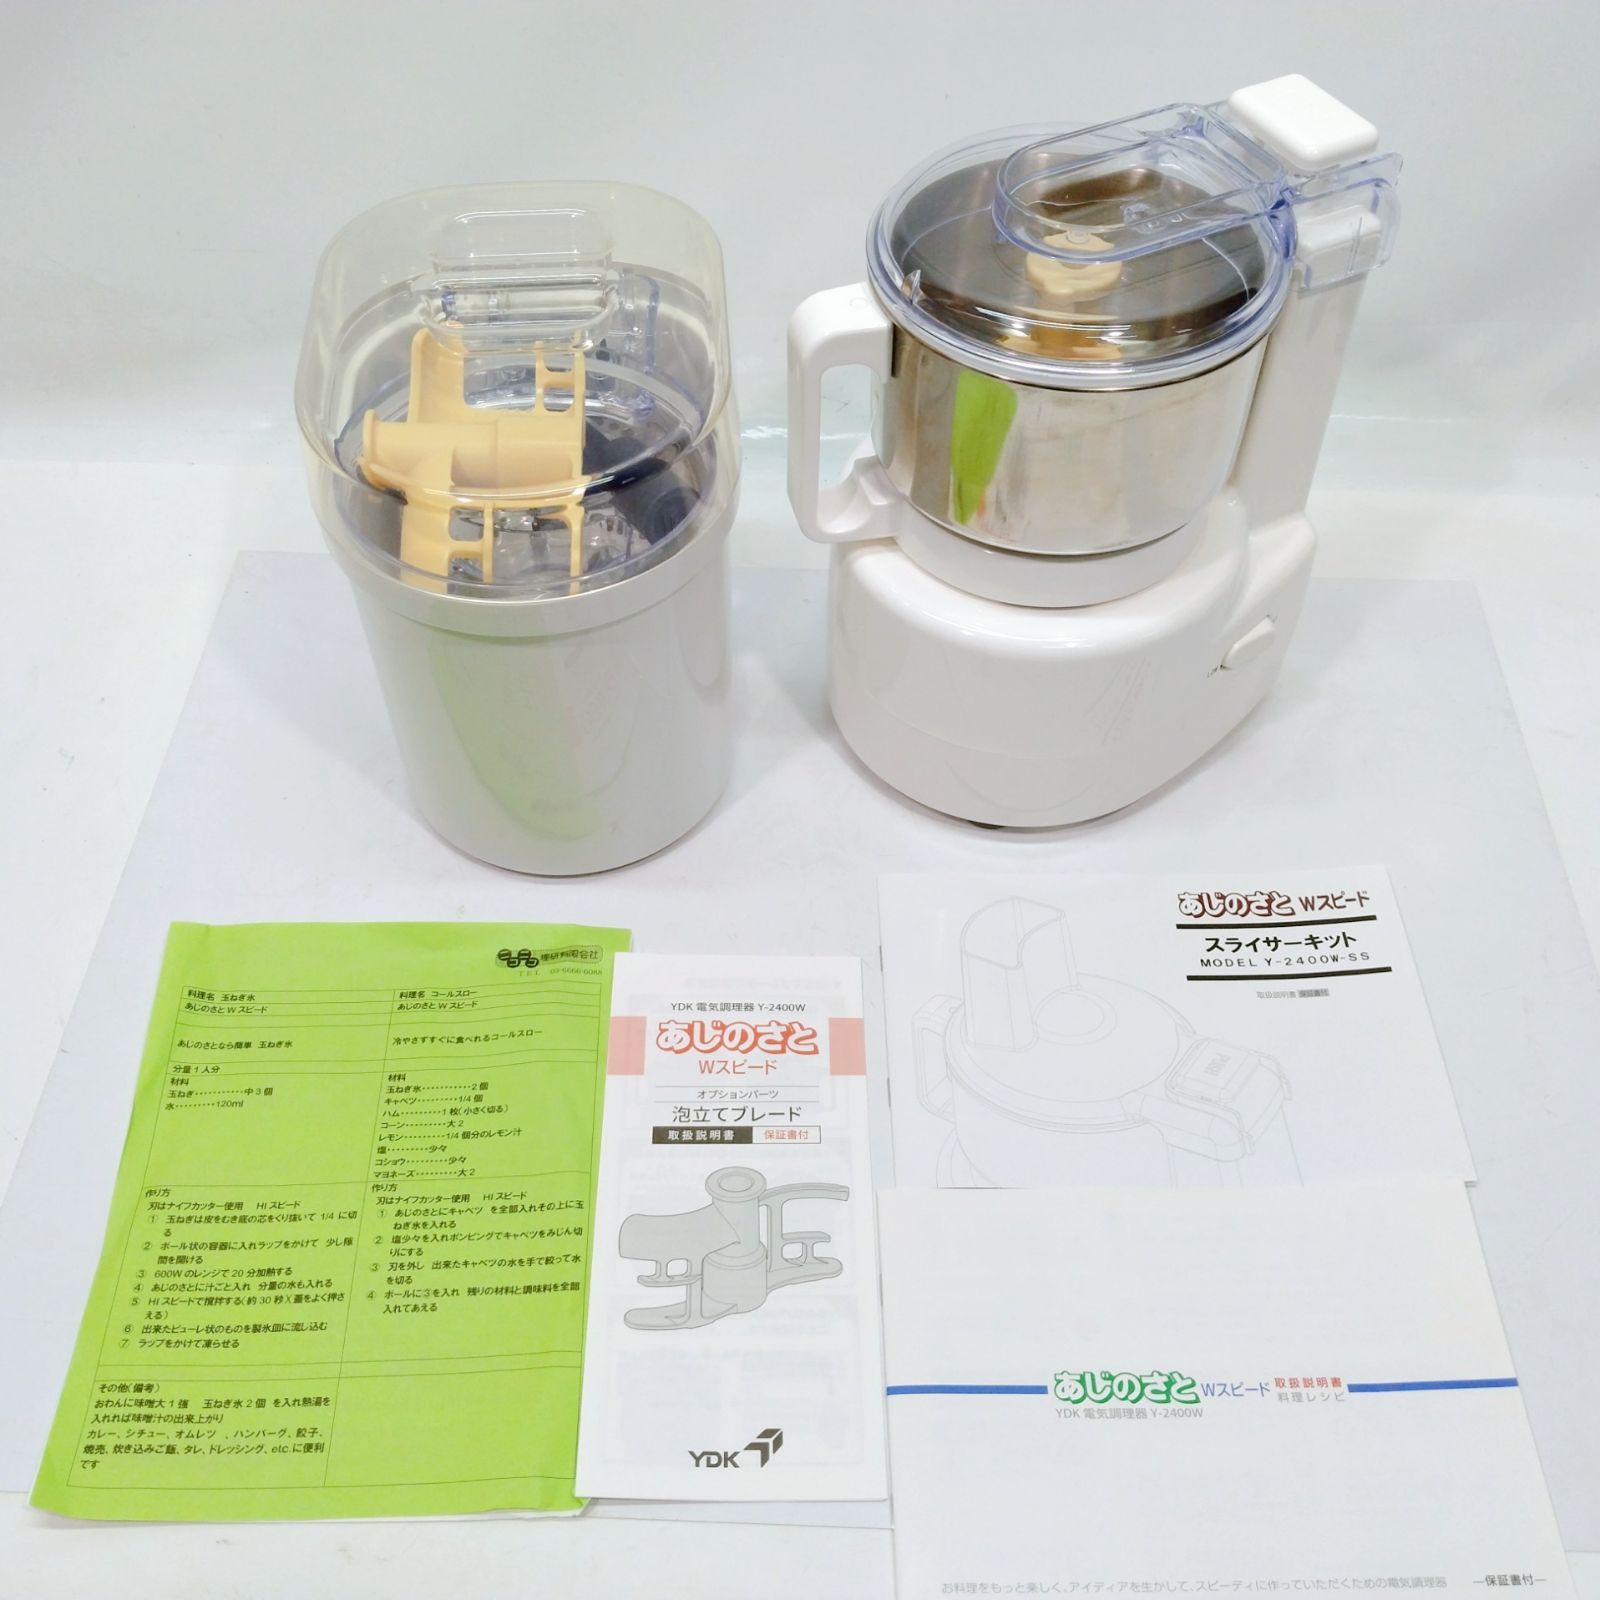 電気調理器 あじのさと Y-2400W 商品コード3721210-anpe.bj